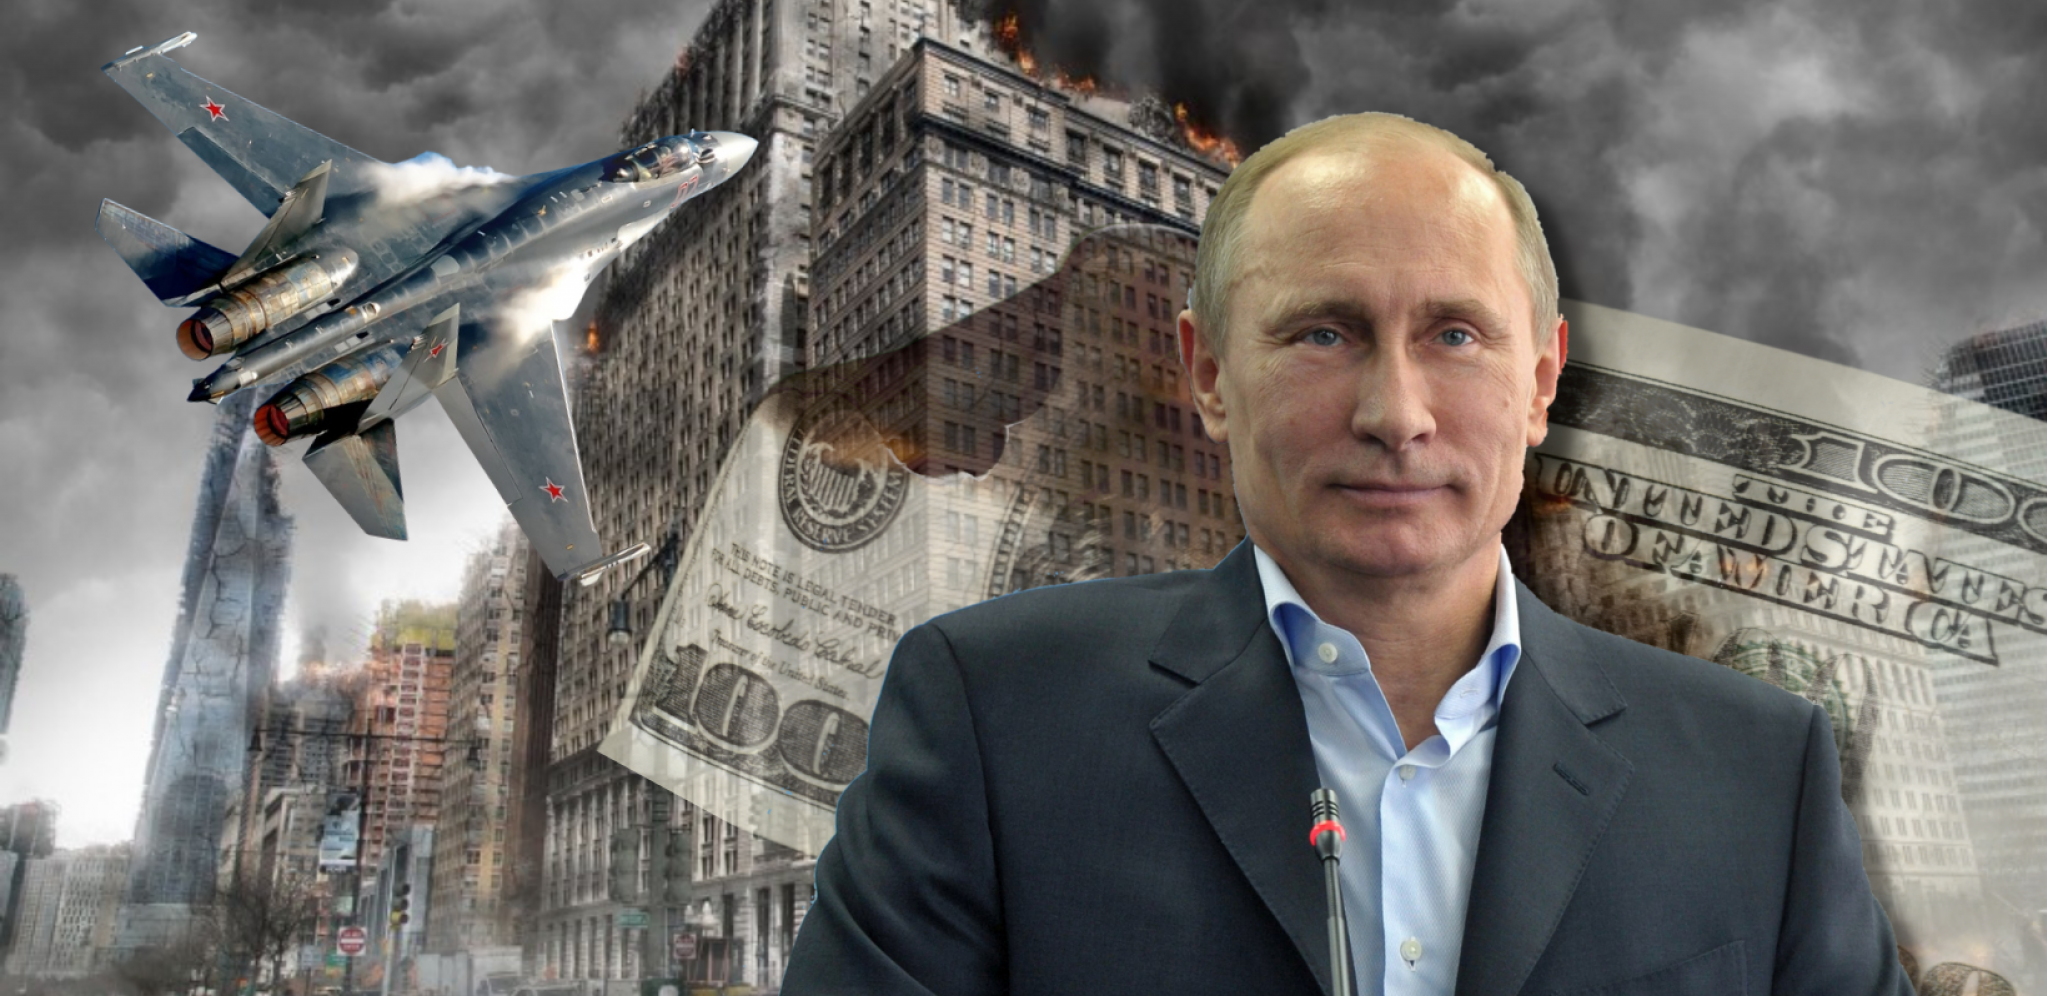 RUSIJA STALA NA PUT ZAPADNOM BEZOBRAZLUKU Kremlj poslao kratku i jasnu poruku "Ne damo vam ništa!"